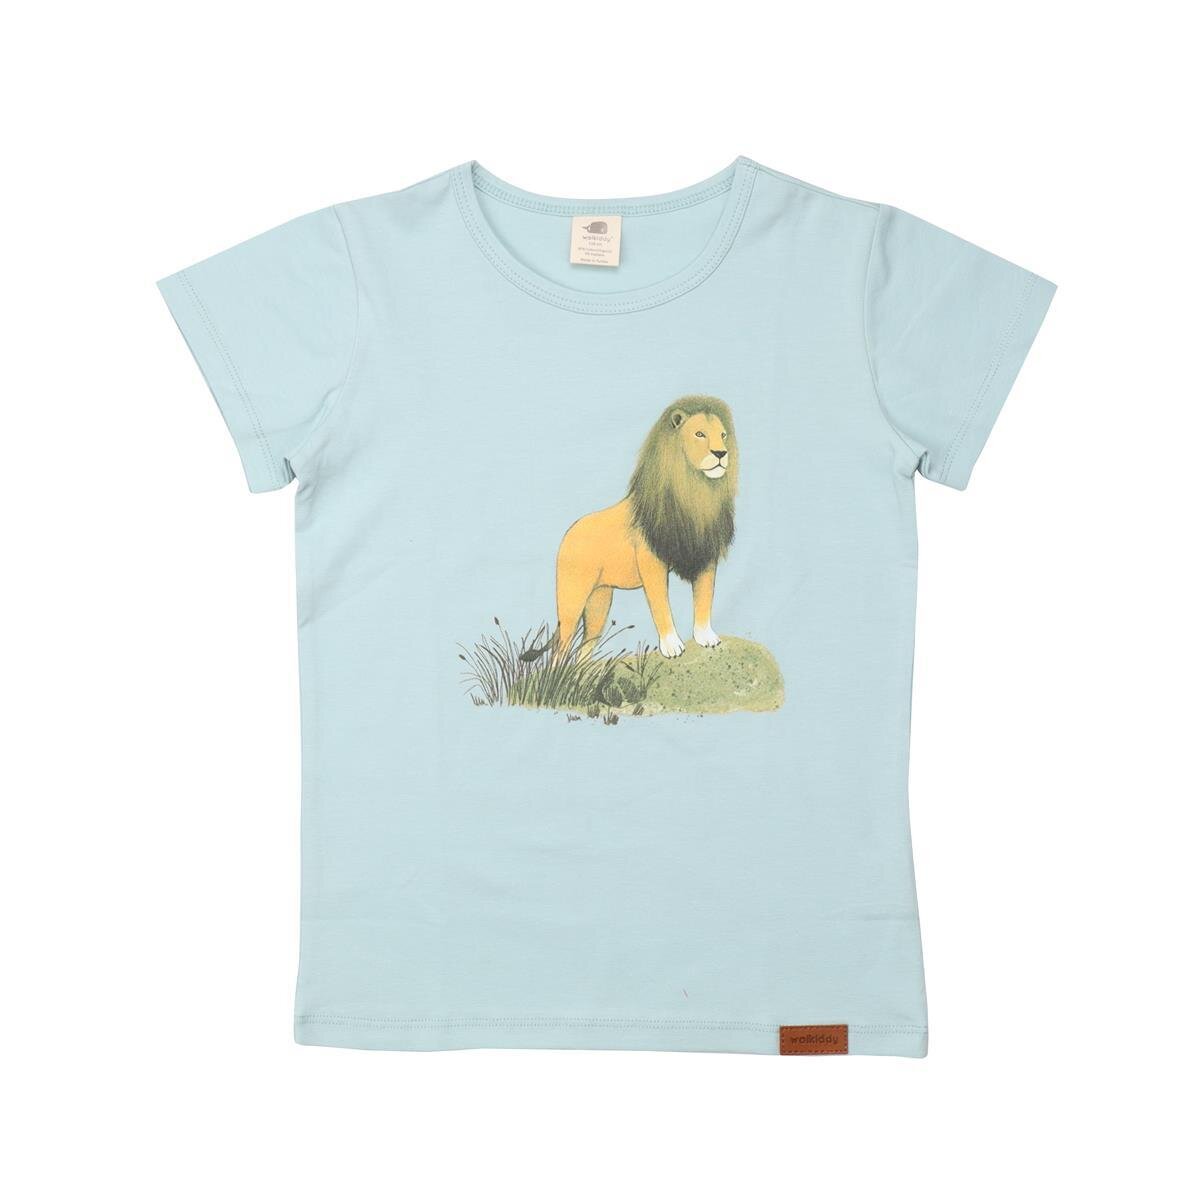 Umweltfreundliches T-Shirt aus Bio-Baumwolle - LNGN22-318 von Walkidd,  13,17 €